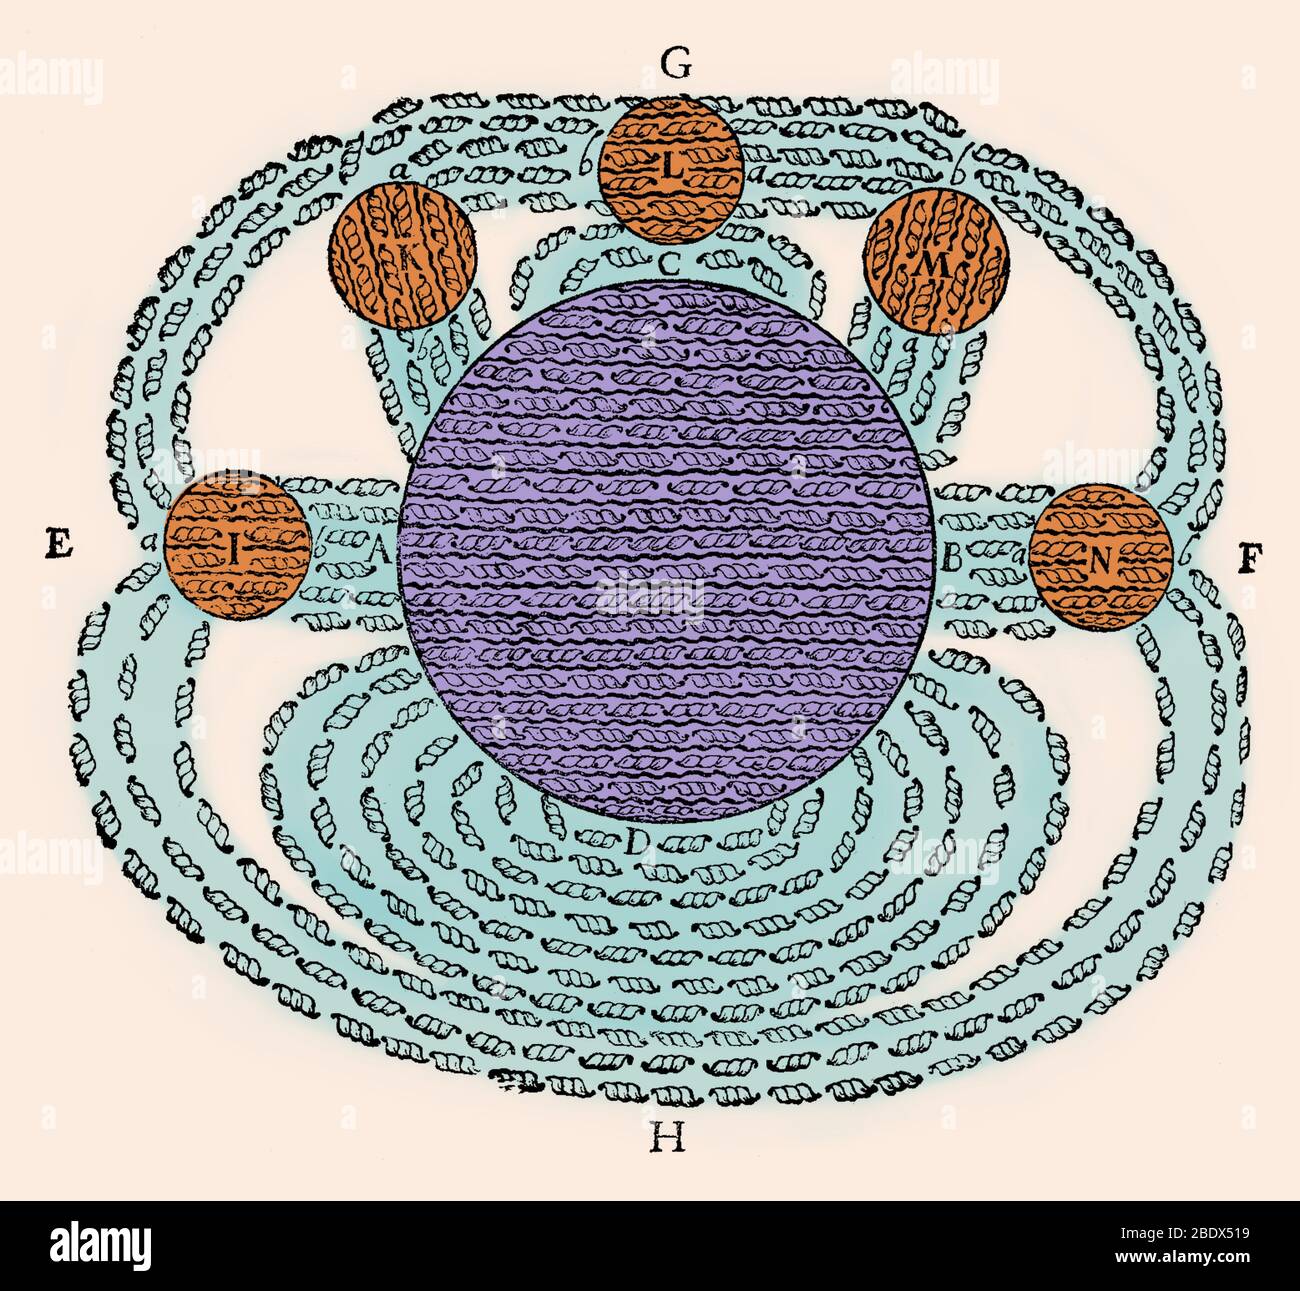 Il campo magnetico da René Descartes, da Principia Philosophiae, 1644. Questo è stato uno dei primi disegni del concetto di un campo magnetico. Esso mostra il campo magnetico della Terra (D) attirando più calamite rotonde (I, K, L, M, N) e illustra la sua teoria del magnetismo. Descartes proposto che l'attrazione magnetica è stato causato dalla circolazione di minuscole particelle elicoidale, parti filettate (mostrato) che circola attraverso la parallela pori filettato in magneti in attraverso il polo sud (A), fuori attraverso il polo nord (B), e quindi attraverso lo spazio attorno al magnete (G, H) torna al sud Foto Stock